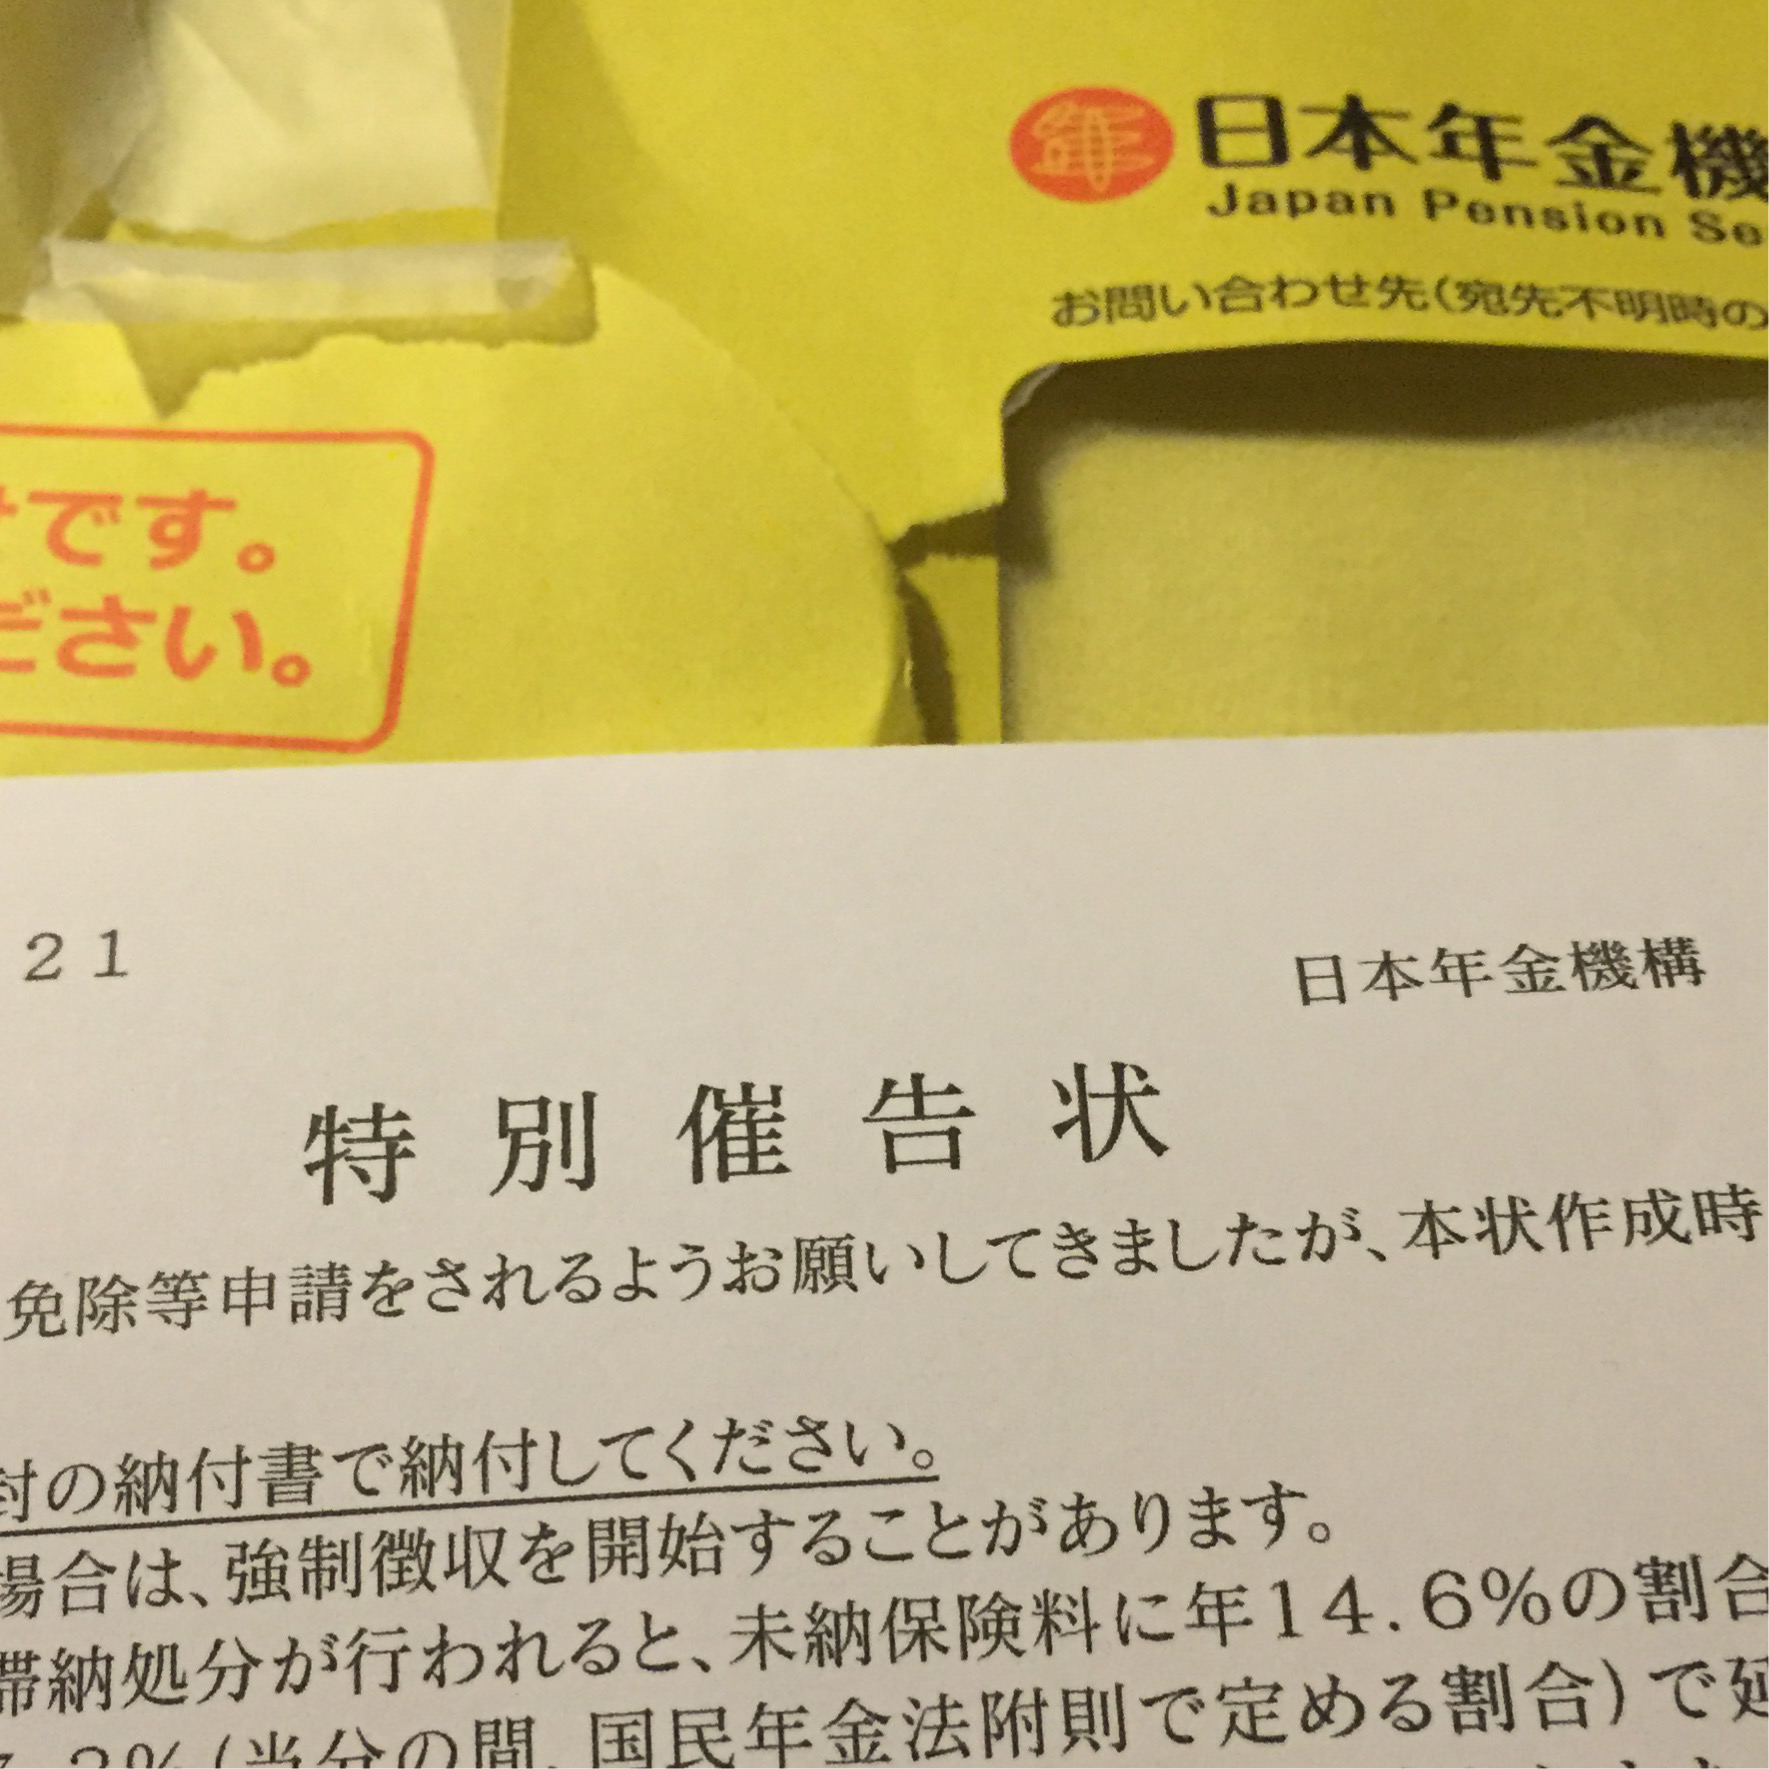 国民年金の特別催告状なるものが黄色い封筒で届いた W Syoabe Blog